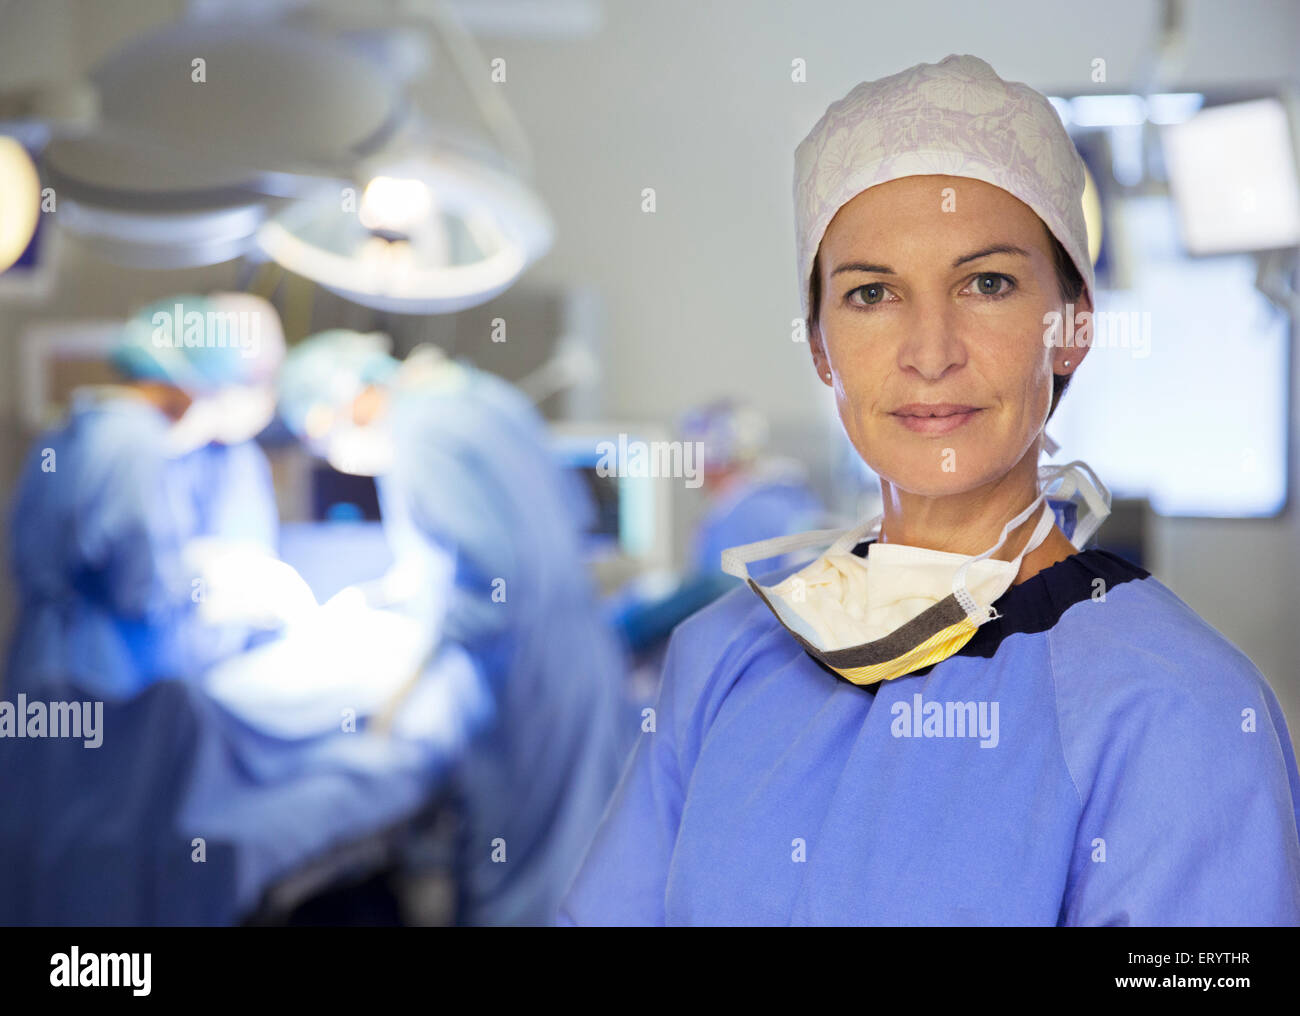 Retrato de seguro médico cirujano en quirófano Foto de stock